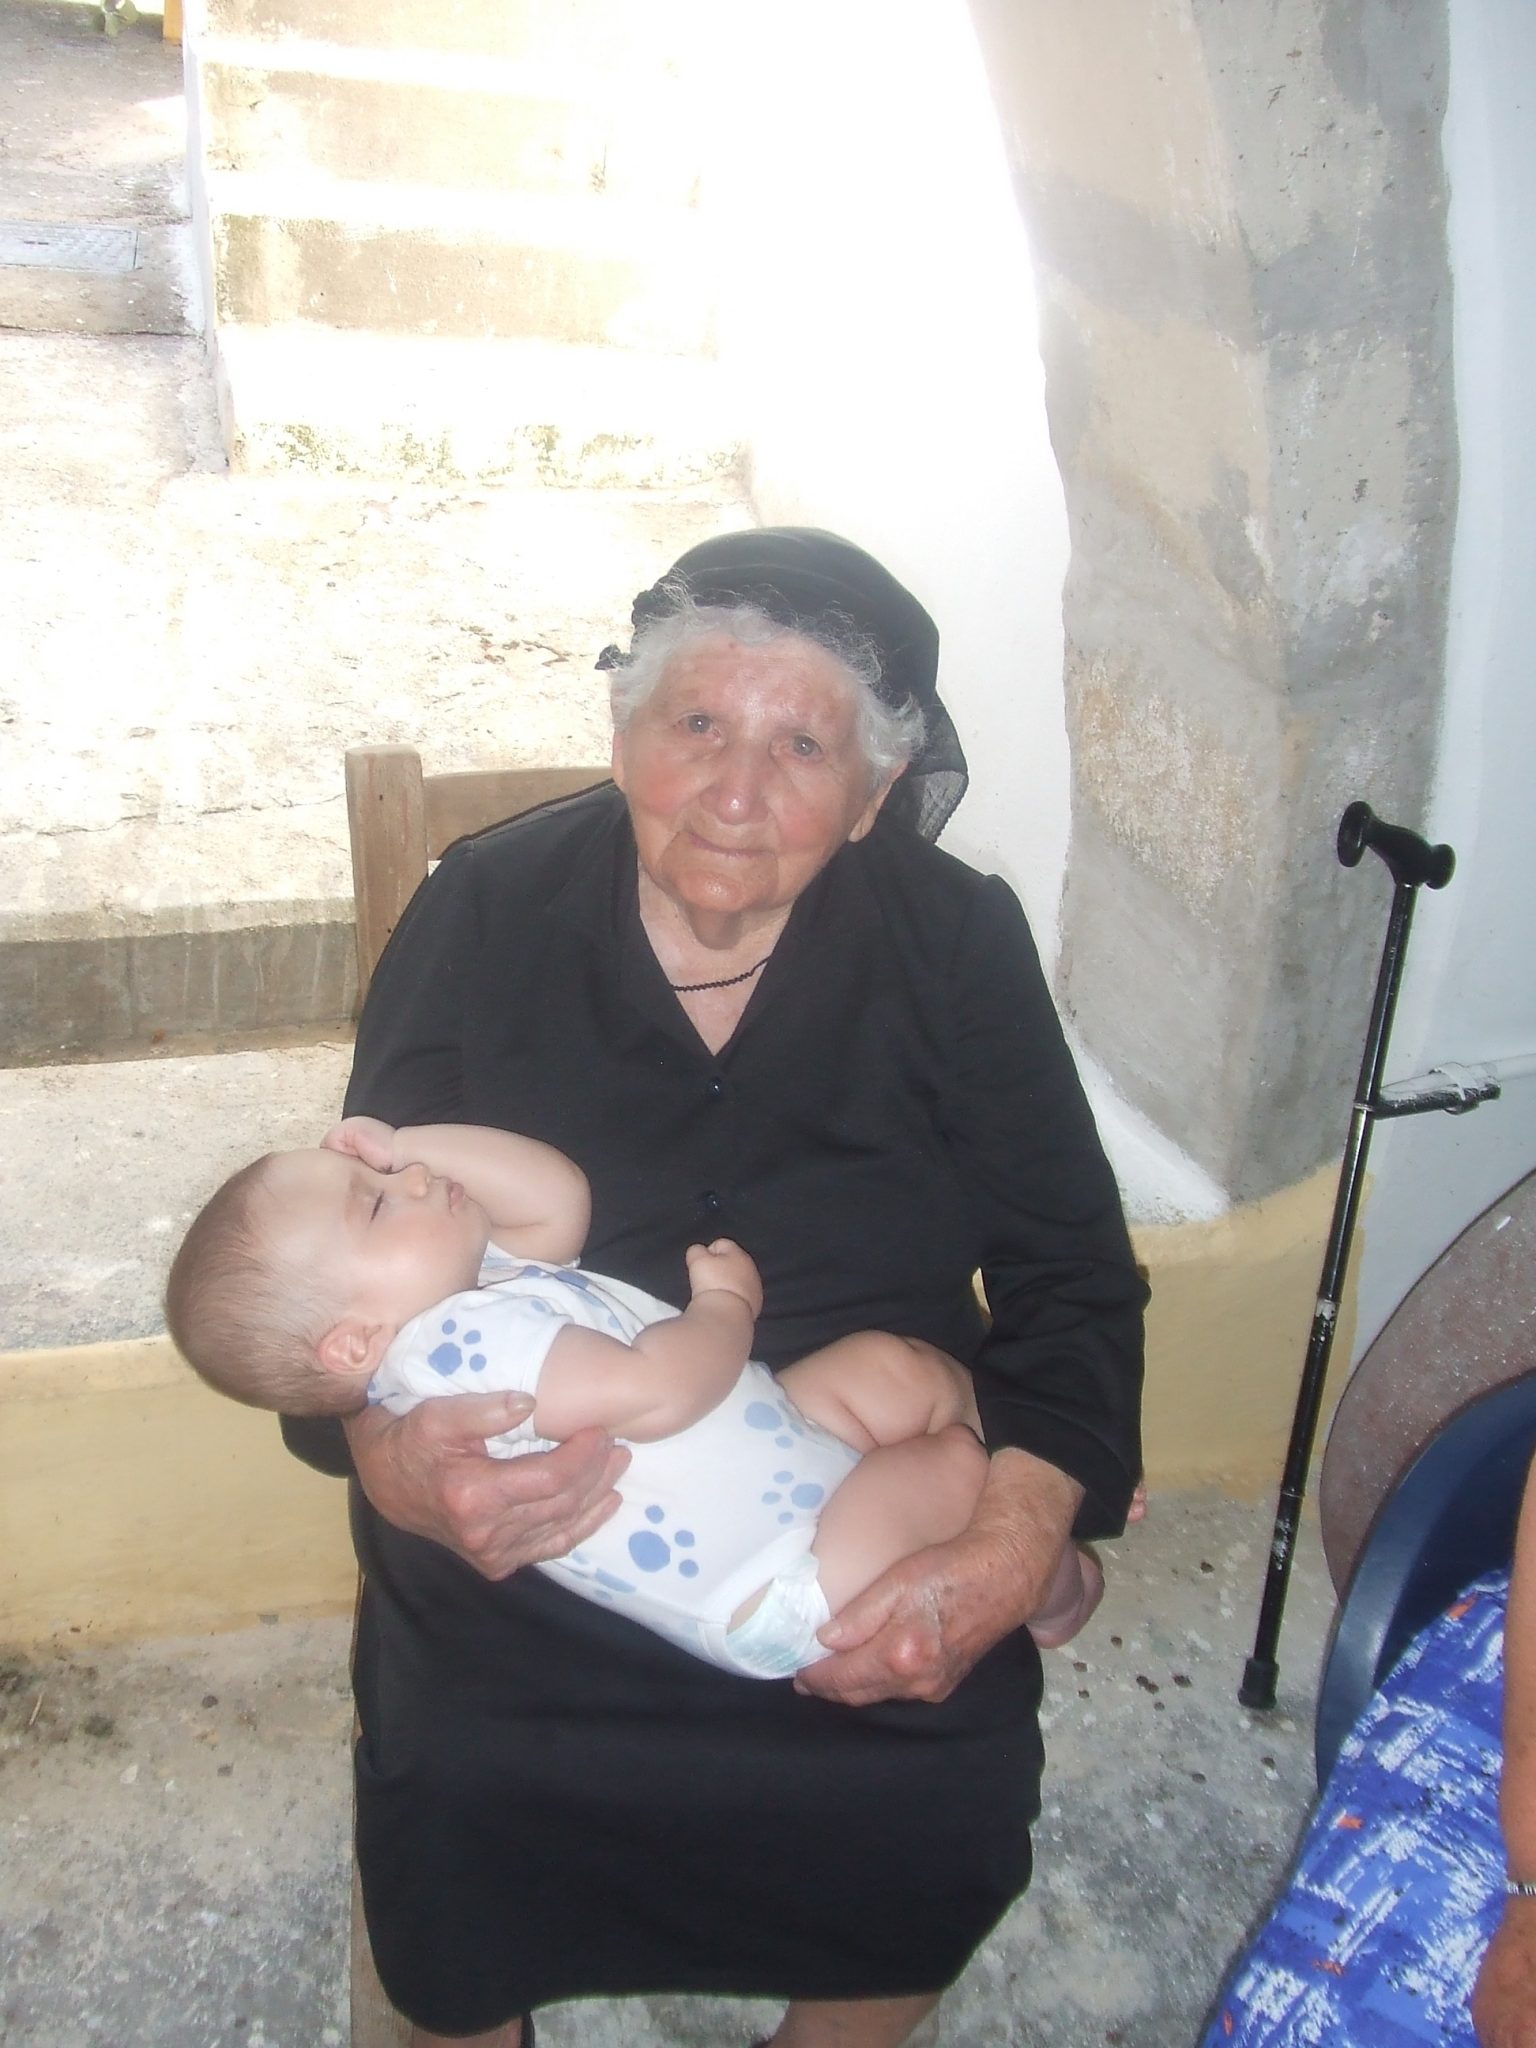 Greek Grandma and grandchild